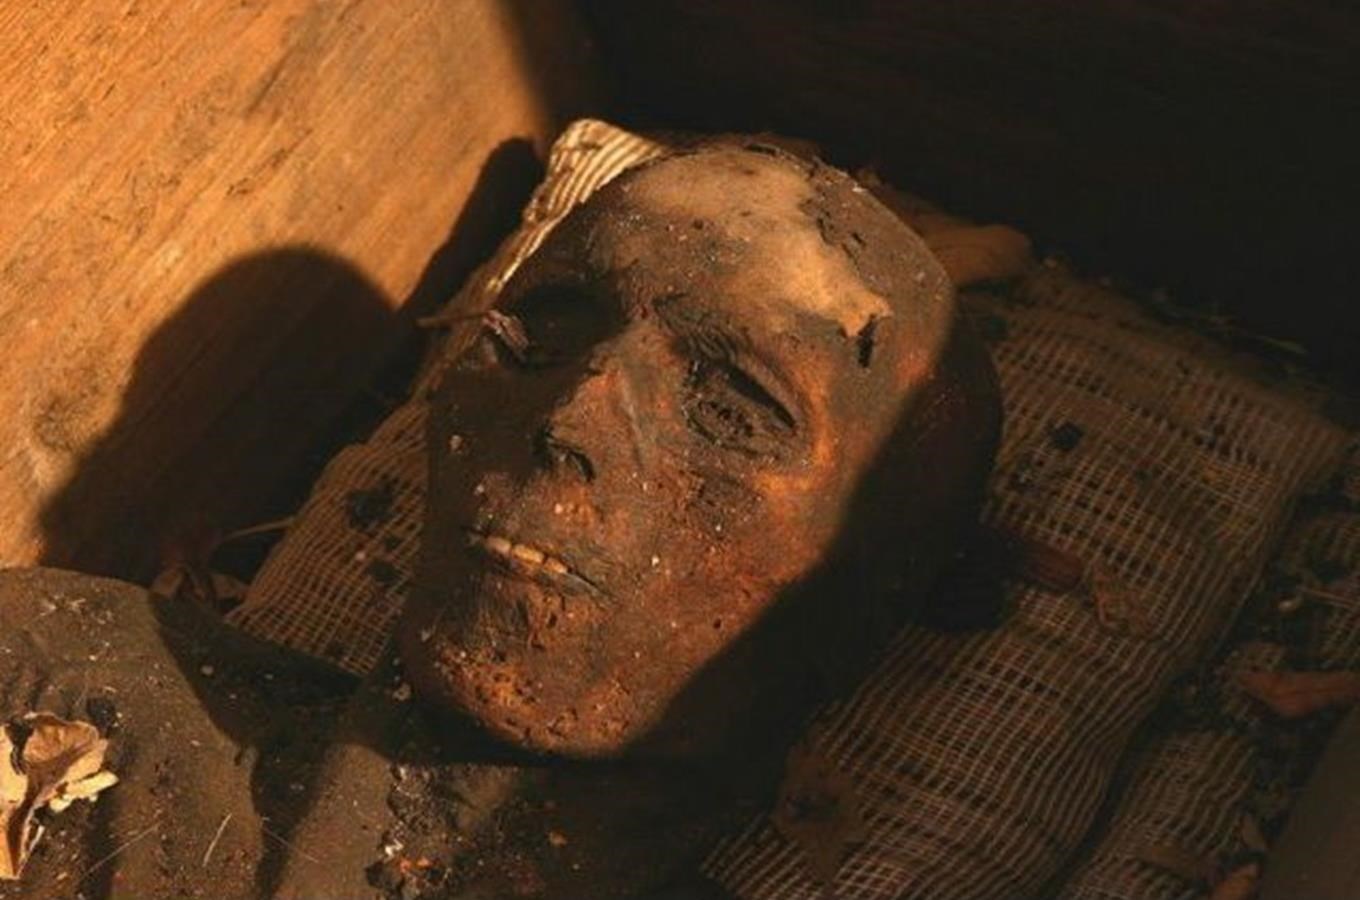 Vamberecké mumie v broumovském klášteře - expozcie není přístupná